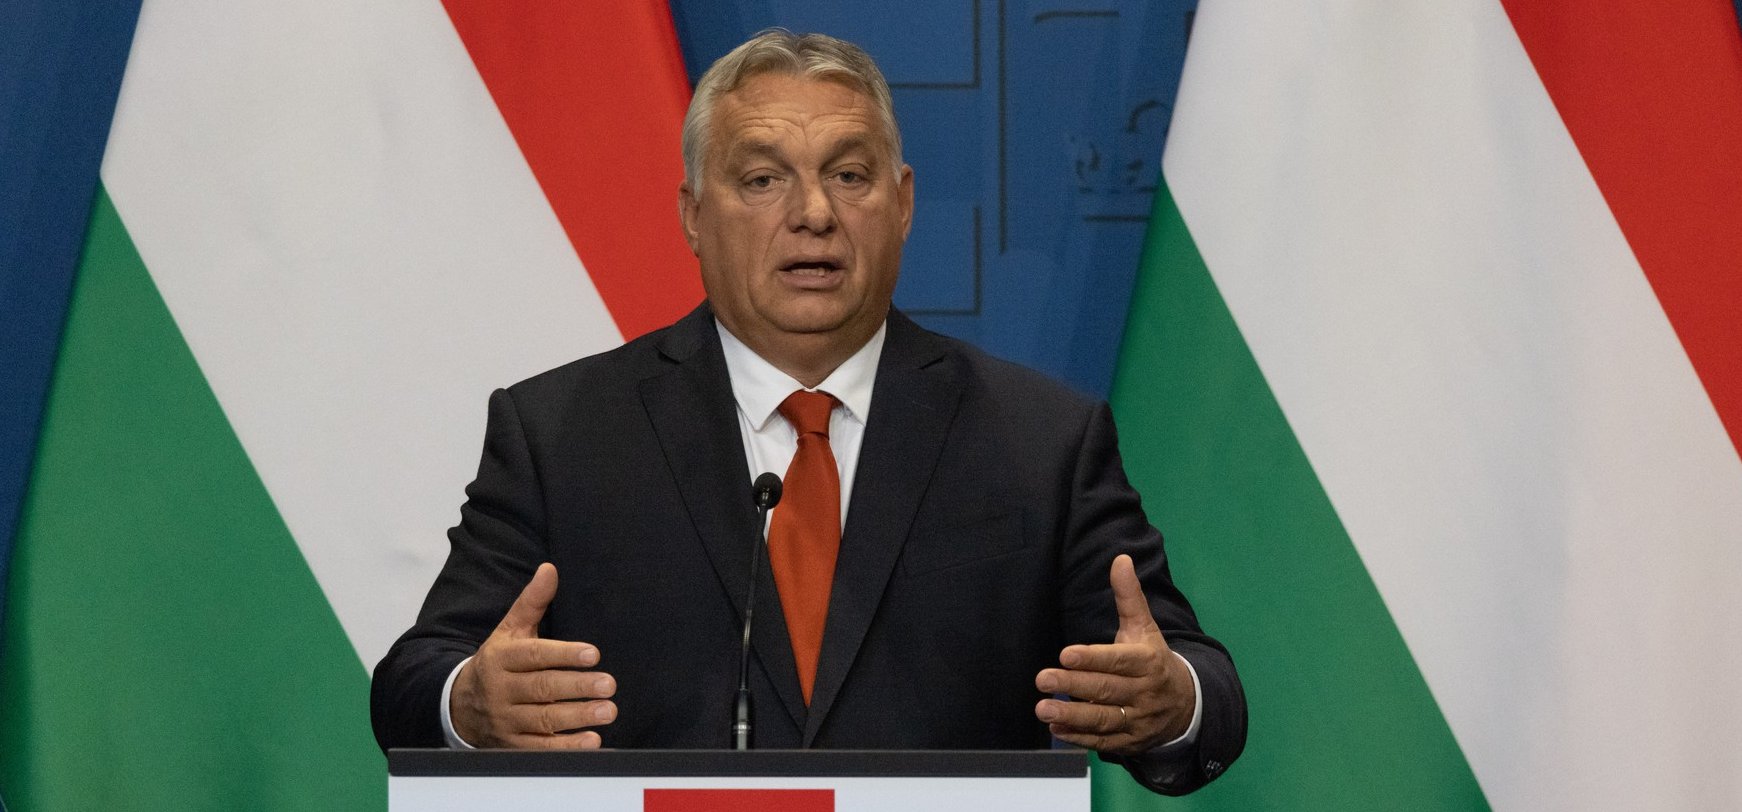 Orbán Viktor óriási bejelentést tett, rengeteg magyart érint a változás